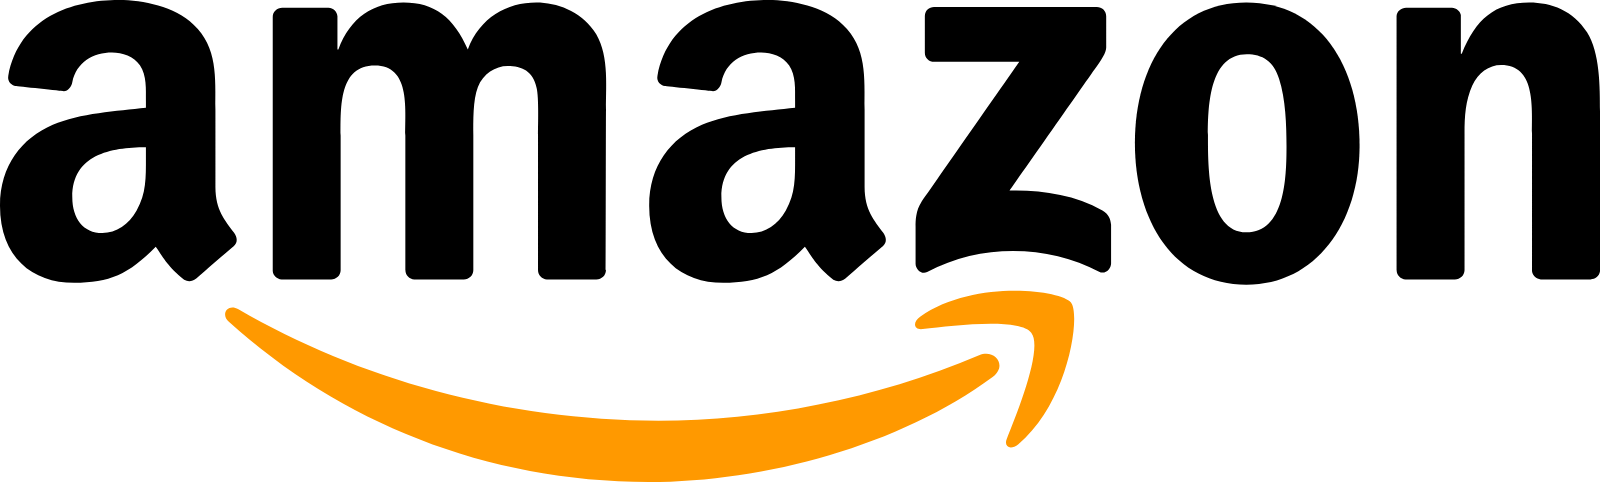 Amazon IT companies in Bangalore